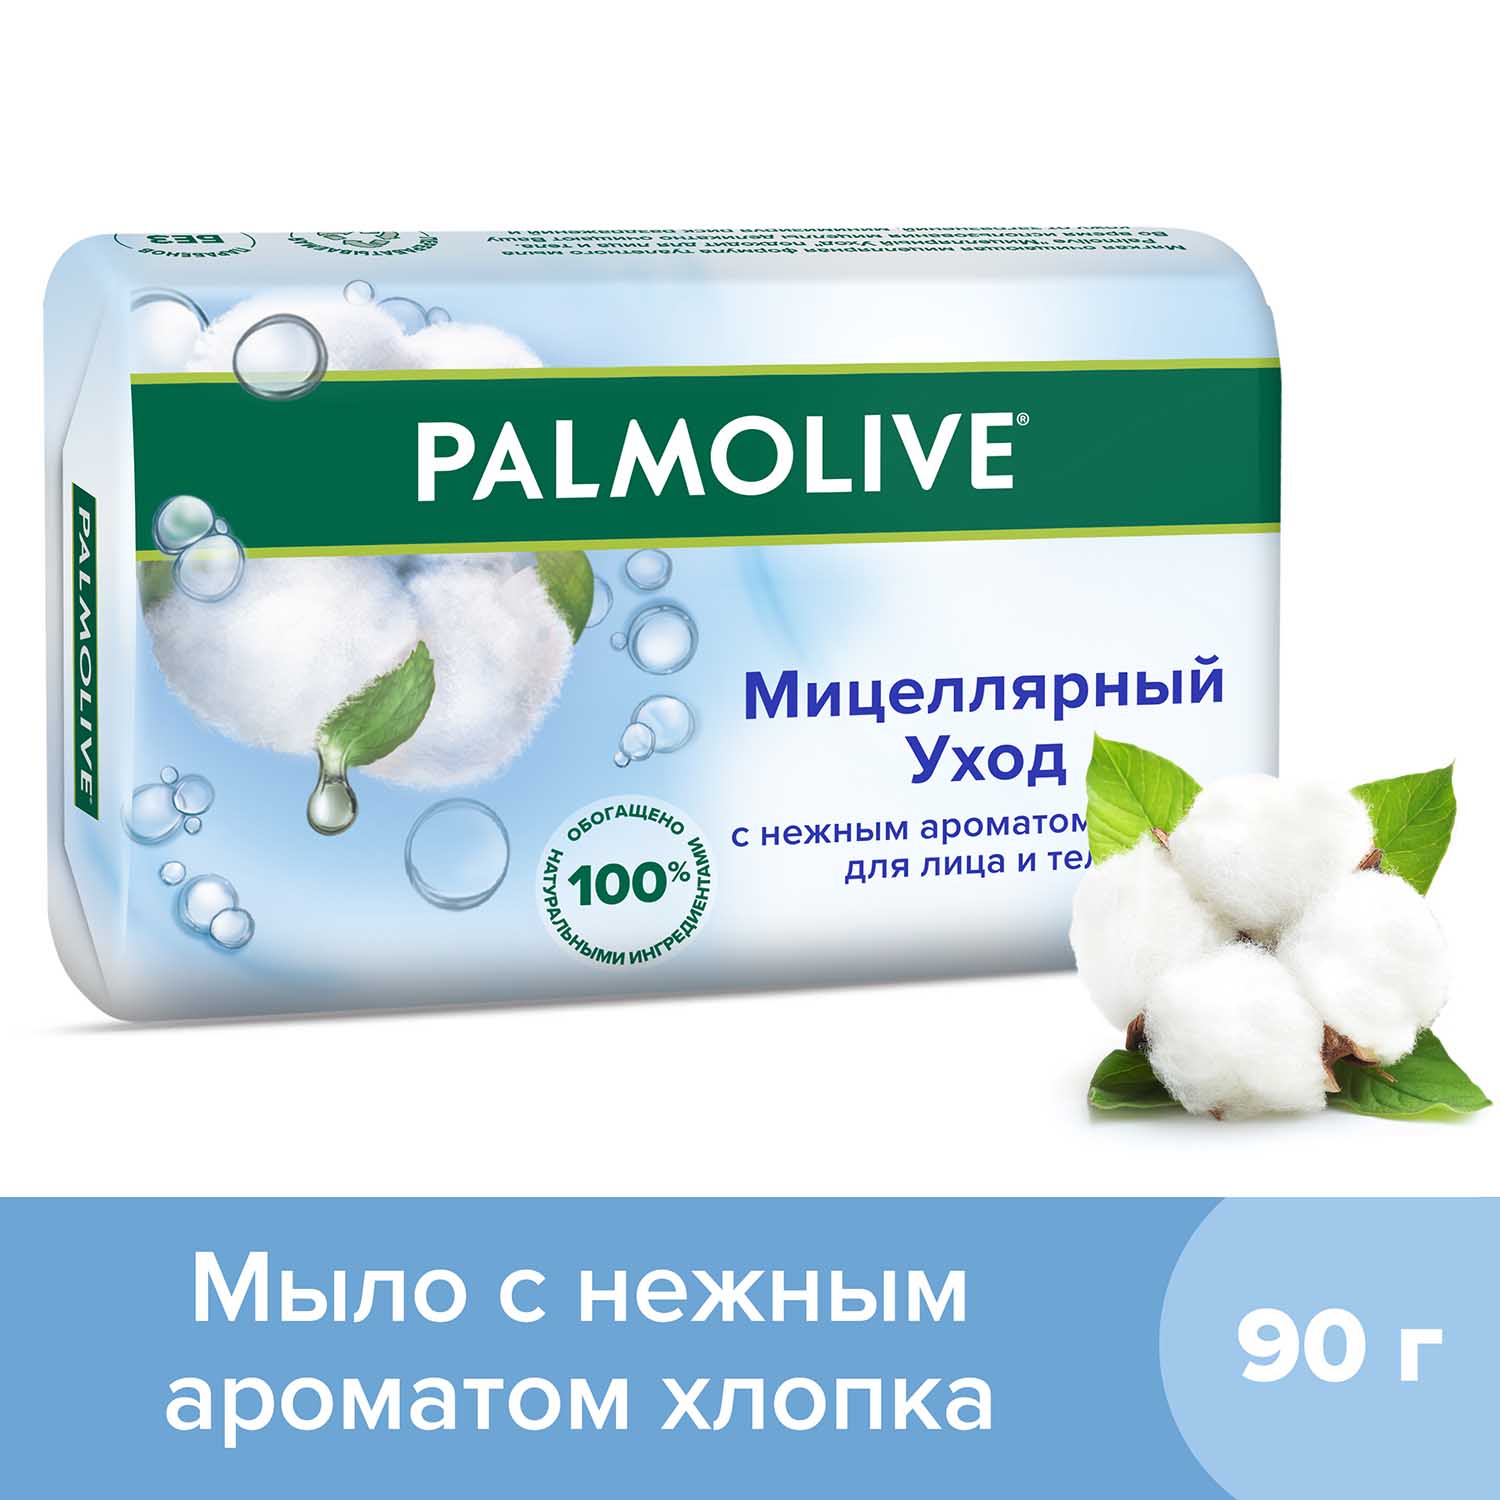 Мыло туалетное твердое Palmolive Мицеллярный Уход с нежным ароматом хлопка, 90г palmolive мыло интенсивное увлажнение 360